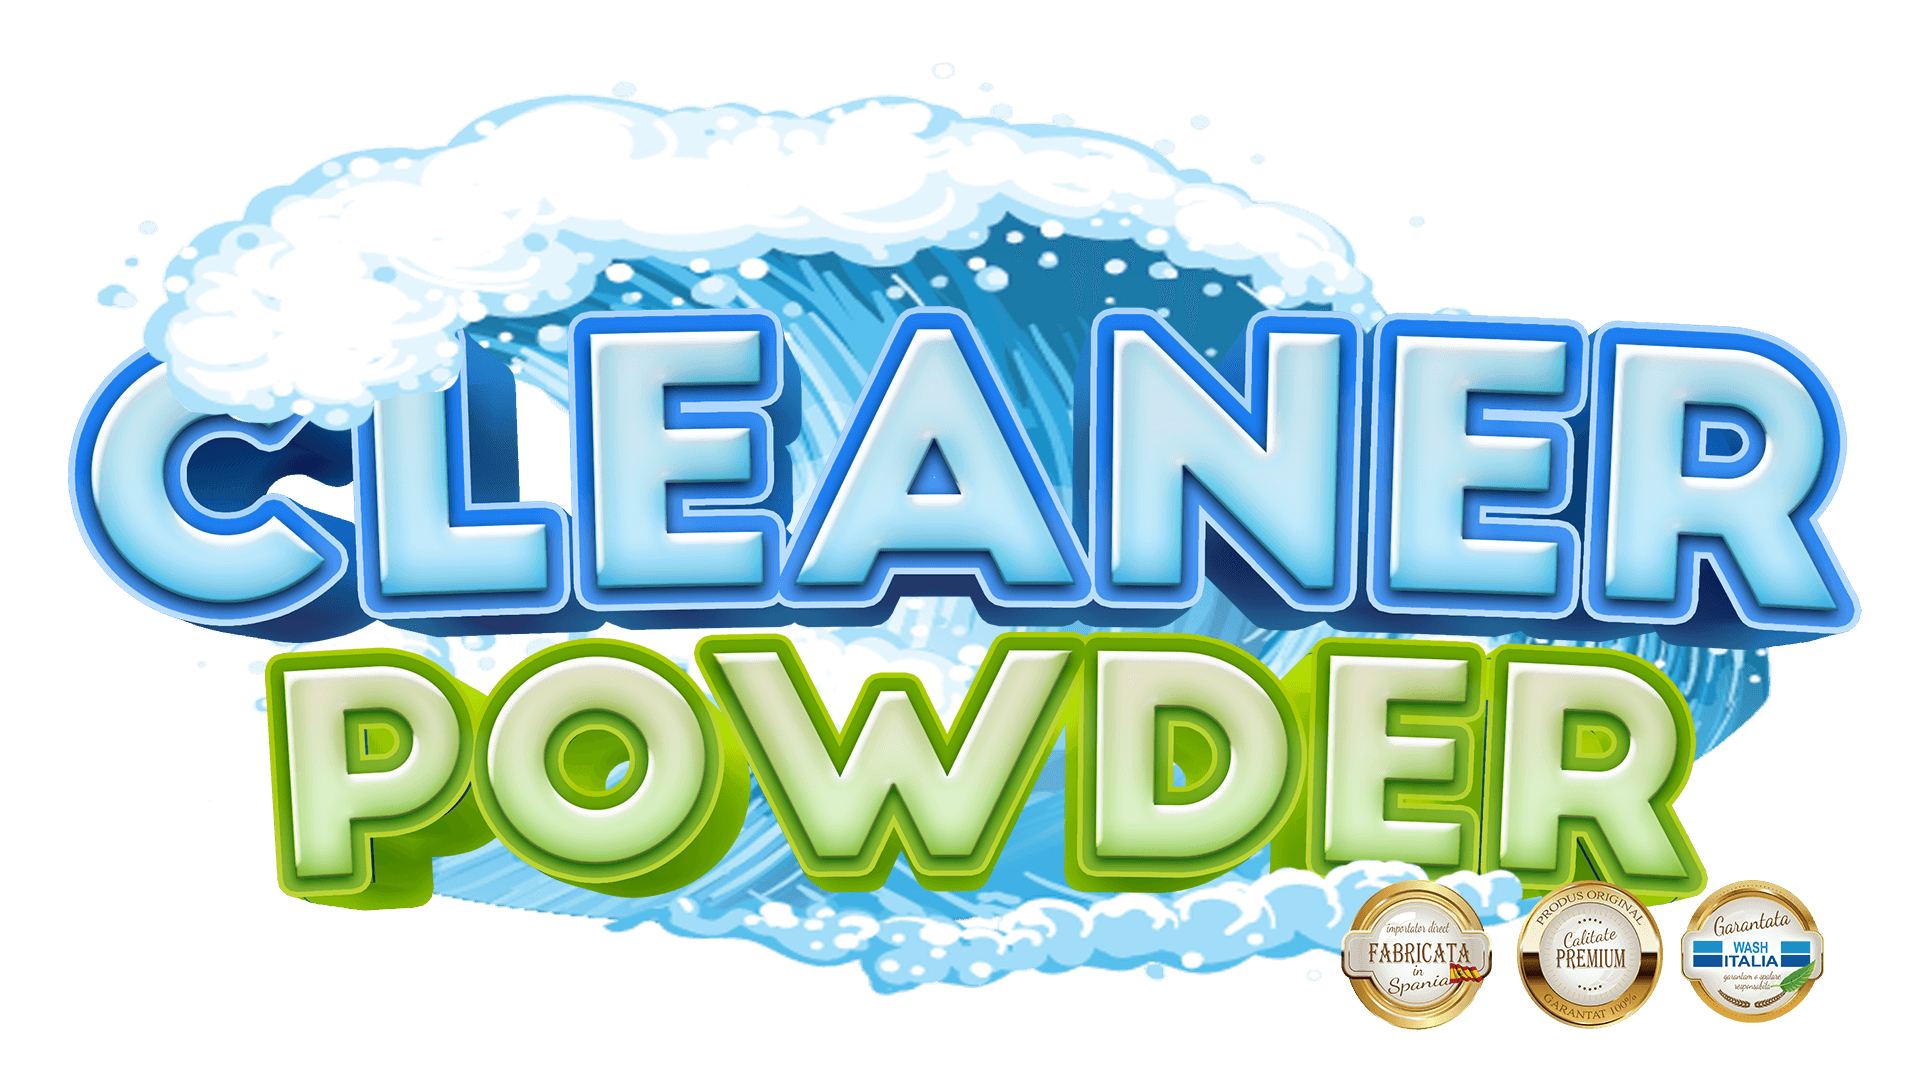 detergenti pudra cleaner powder